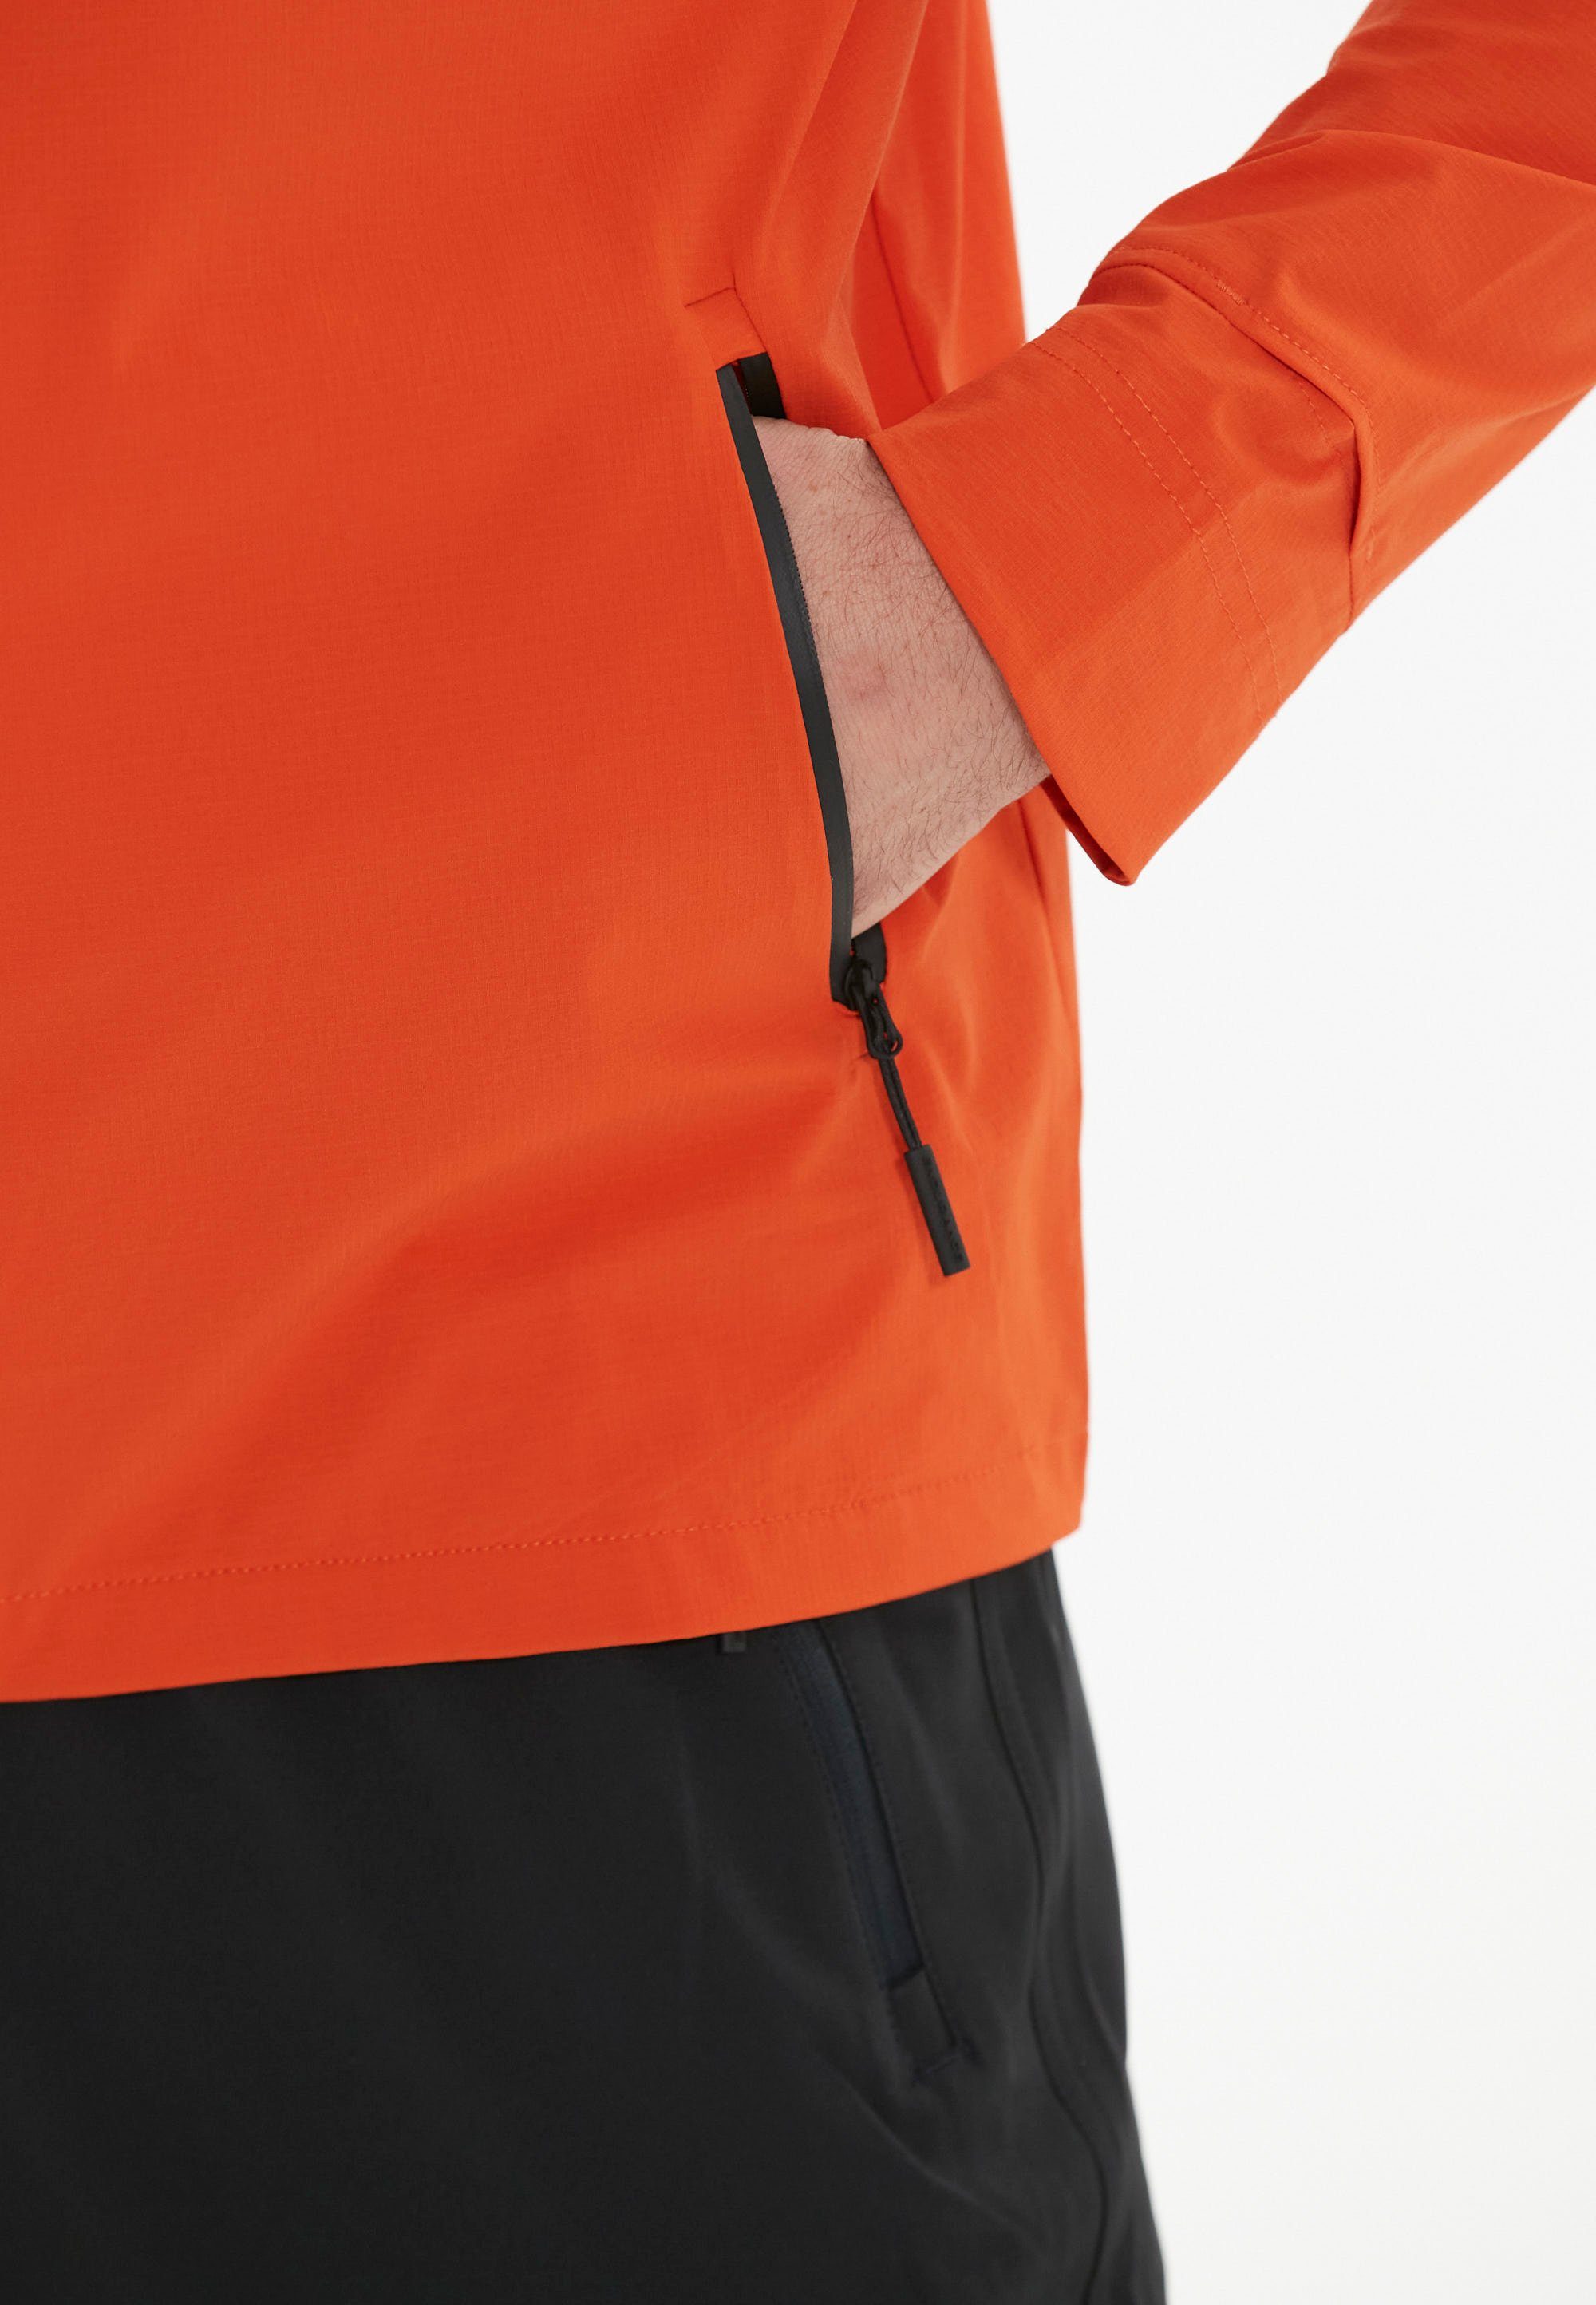 ENDURANCE Laufjacke orange-schwarz Reißverschluss Tellent mit wasserabweisendem